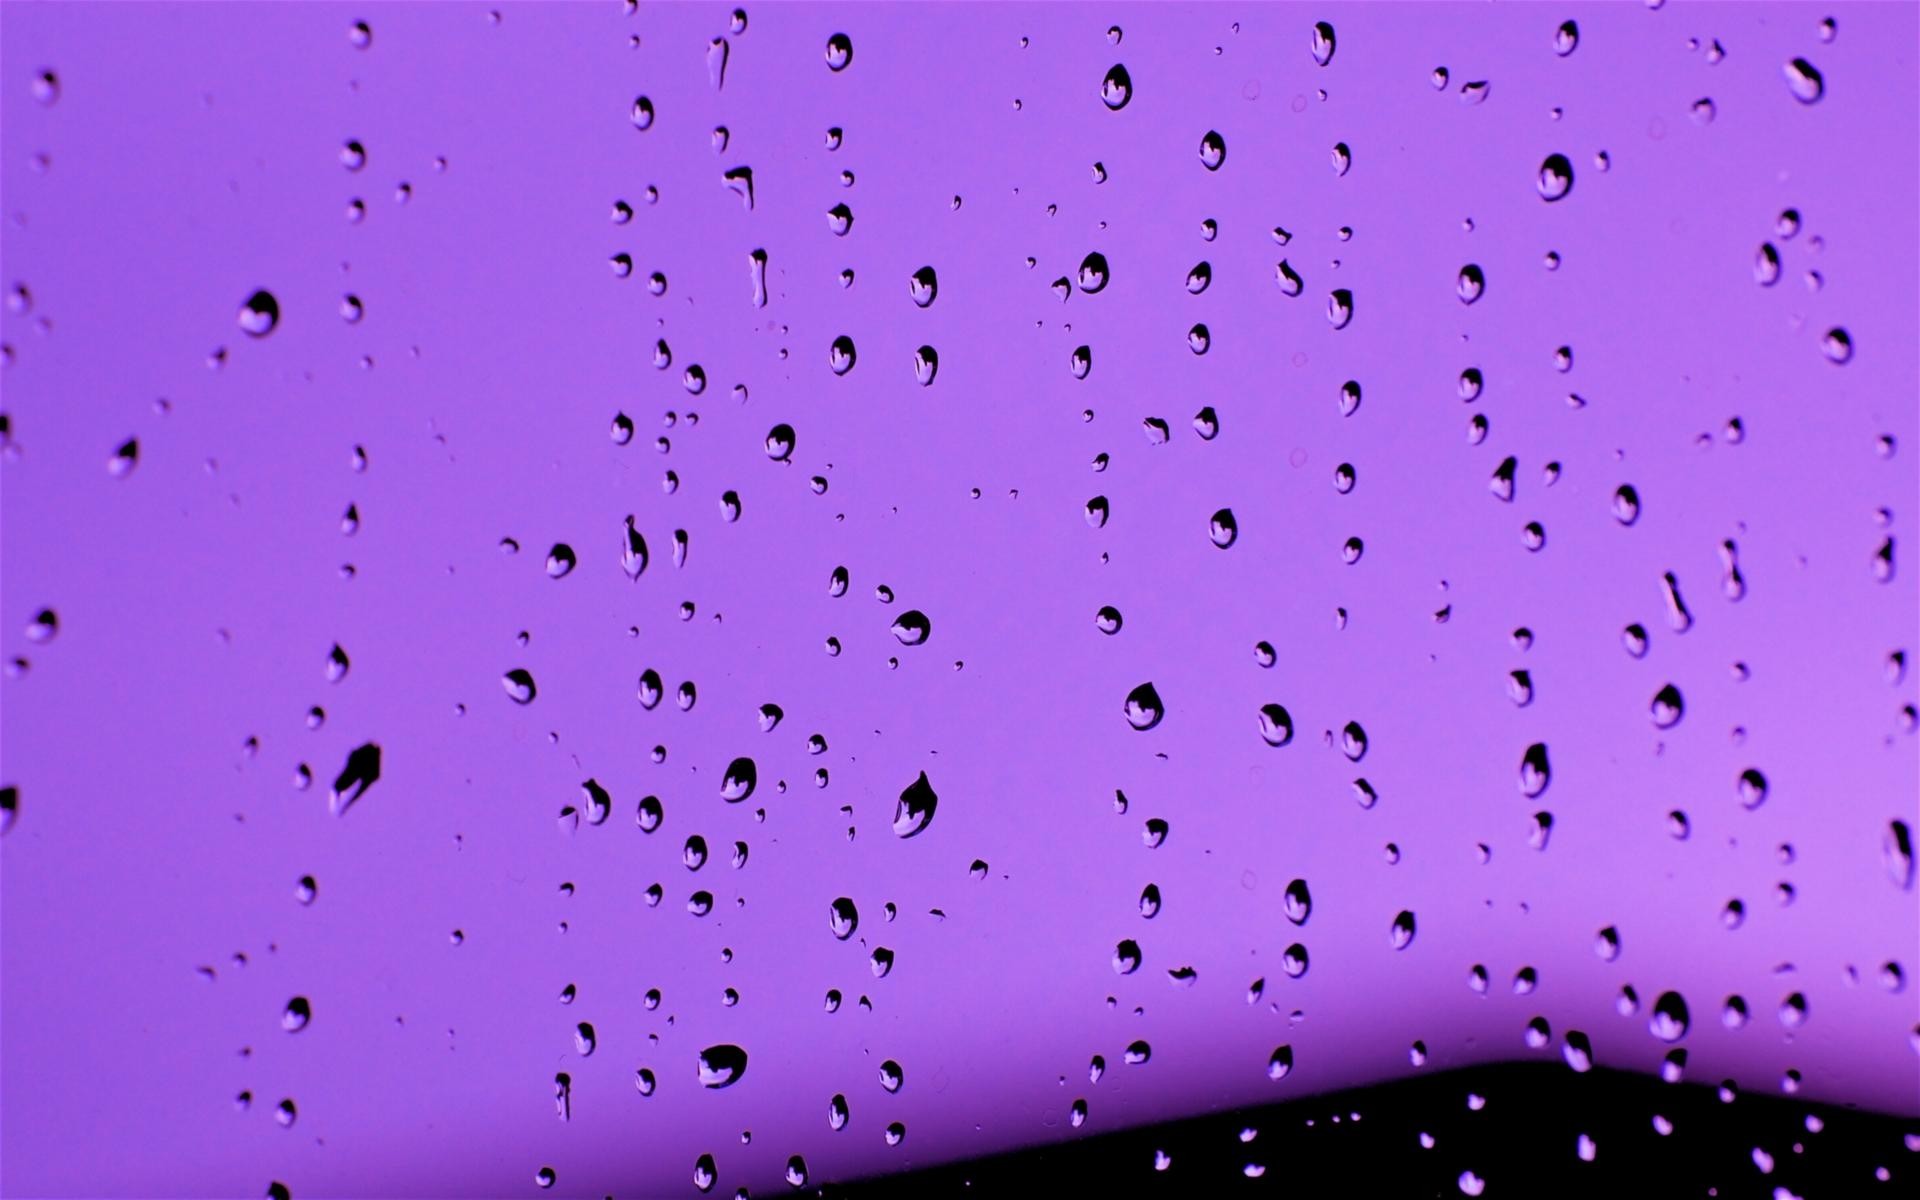 Drops on Purple wallpaper